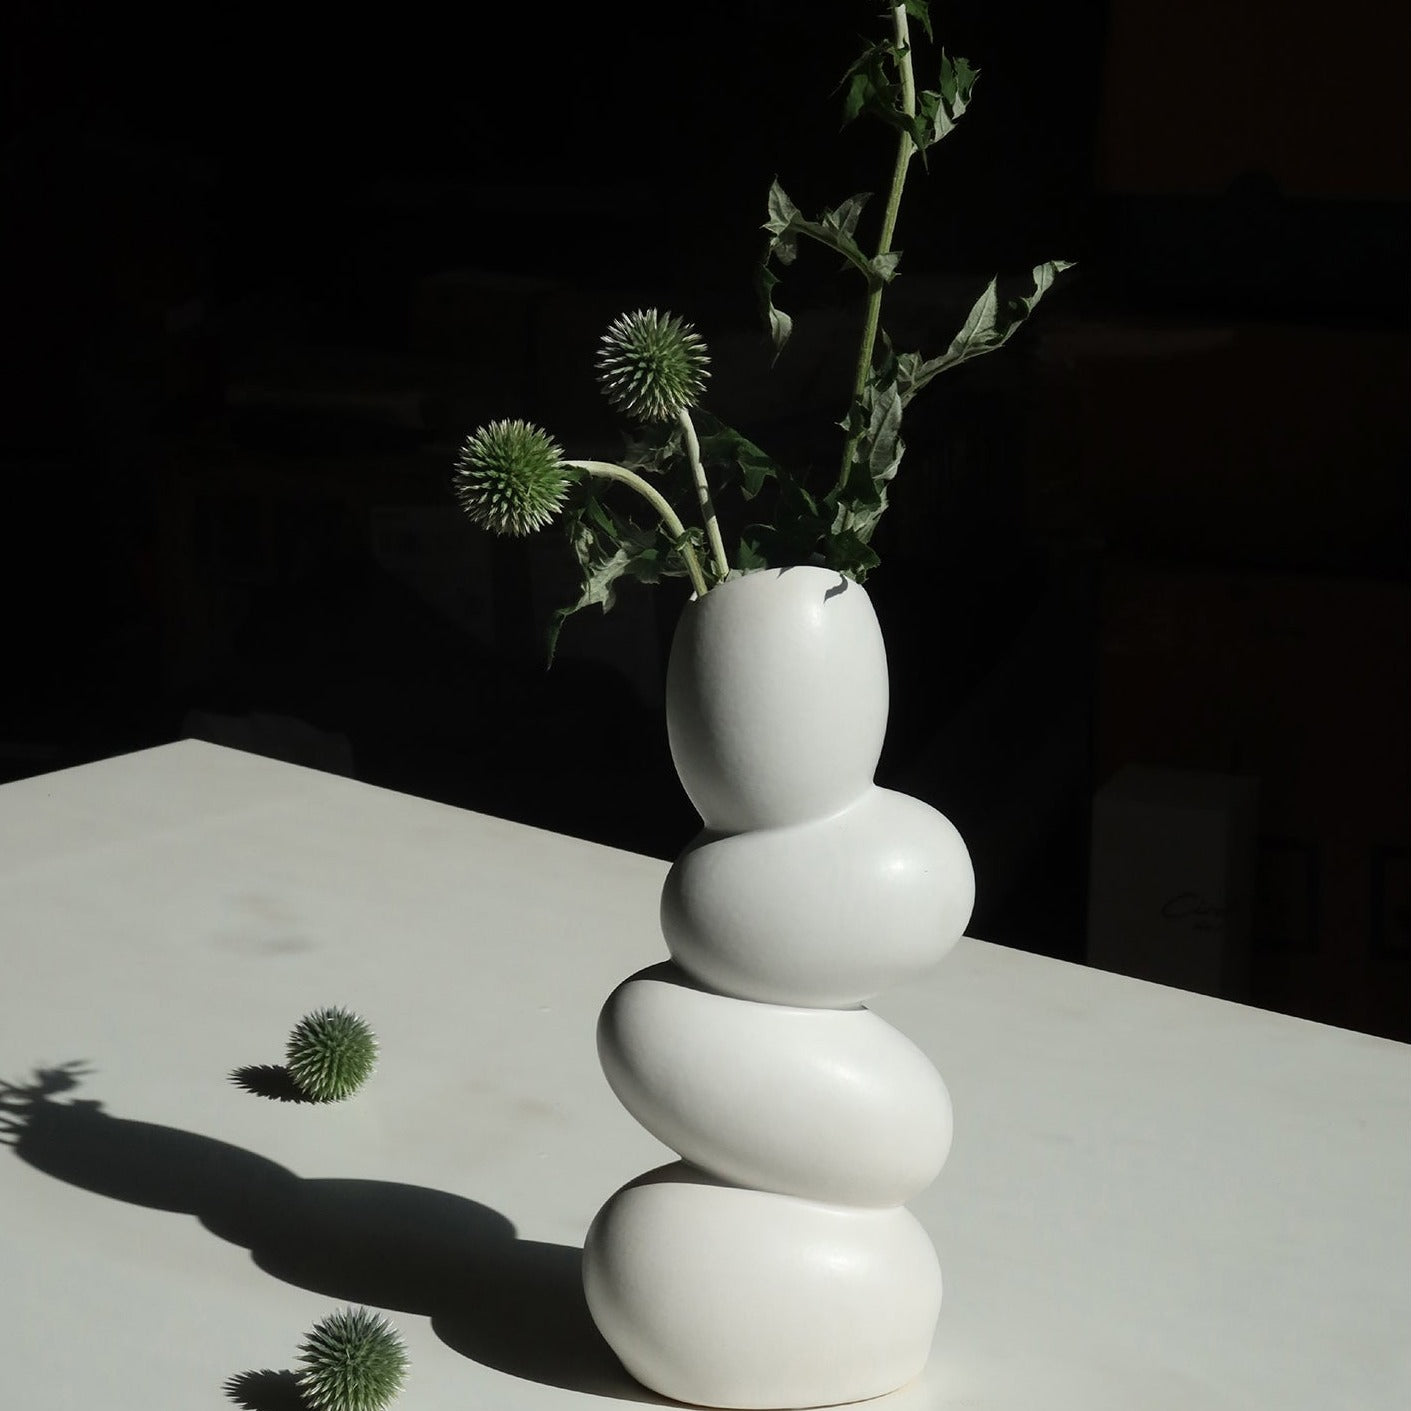 Elegante vaso a forma di uovo in ceramica bianca opaca